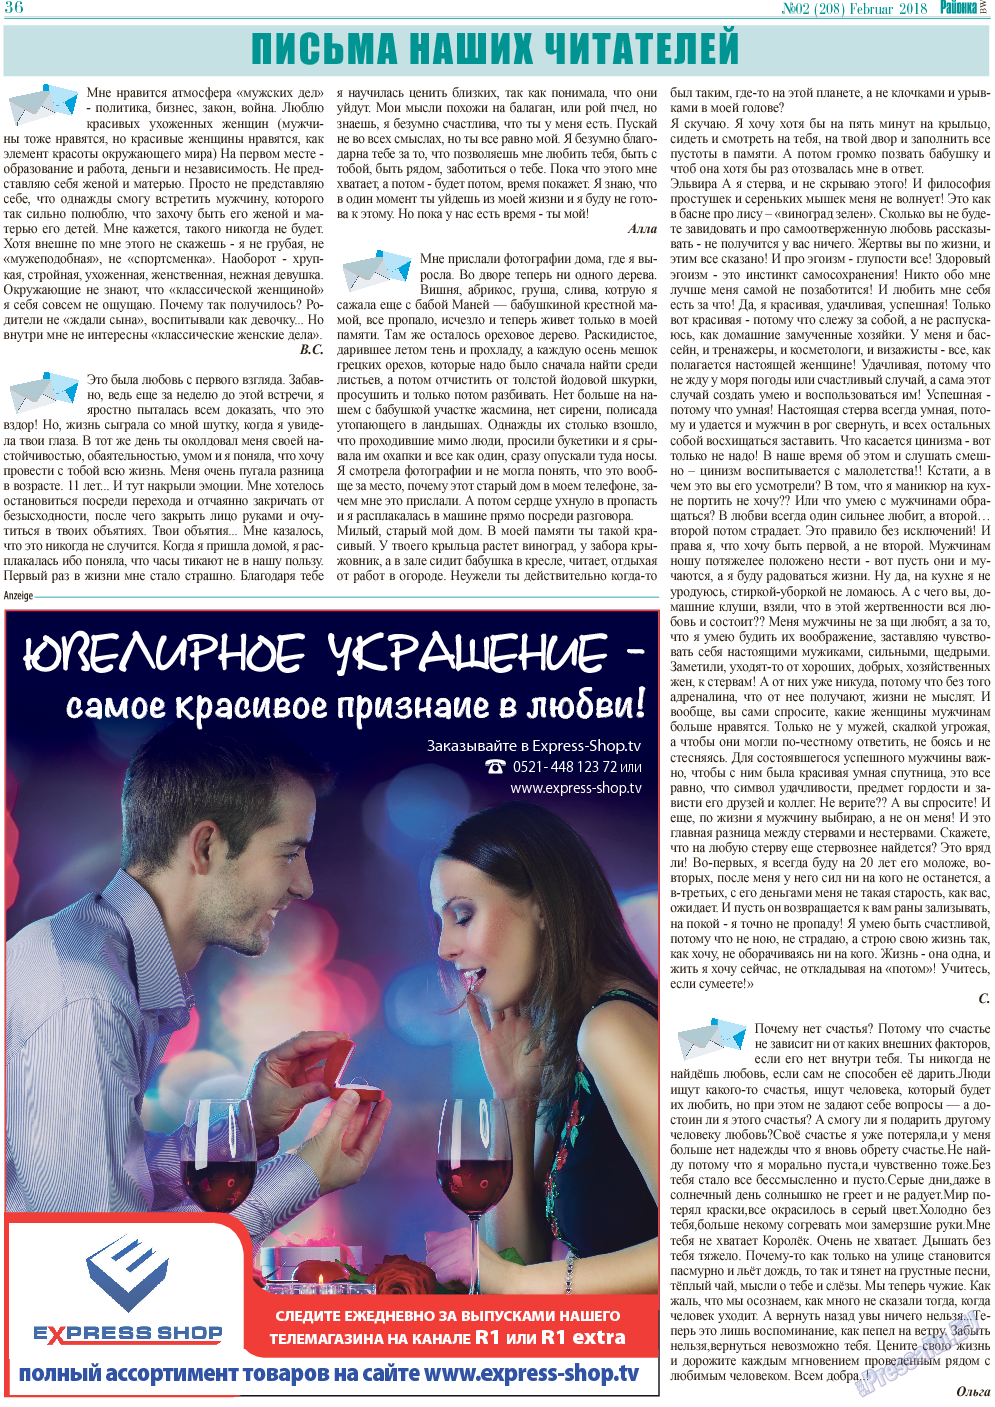 Районка-West (газета). 2018 год, номер 2, стр. 36